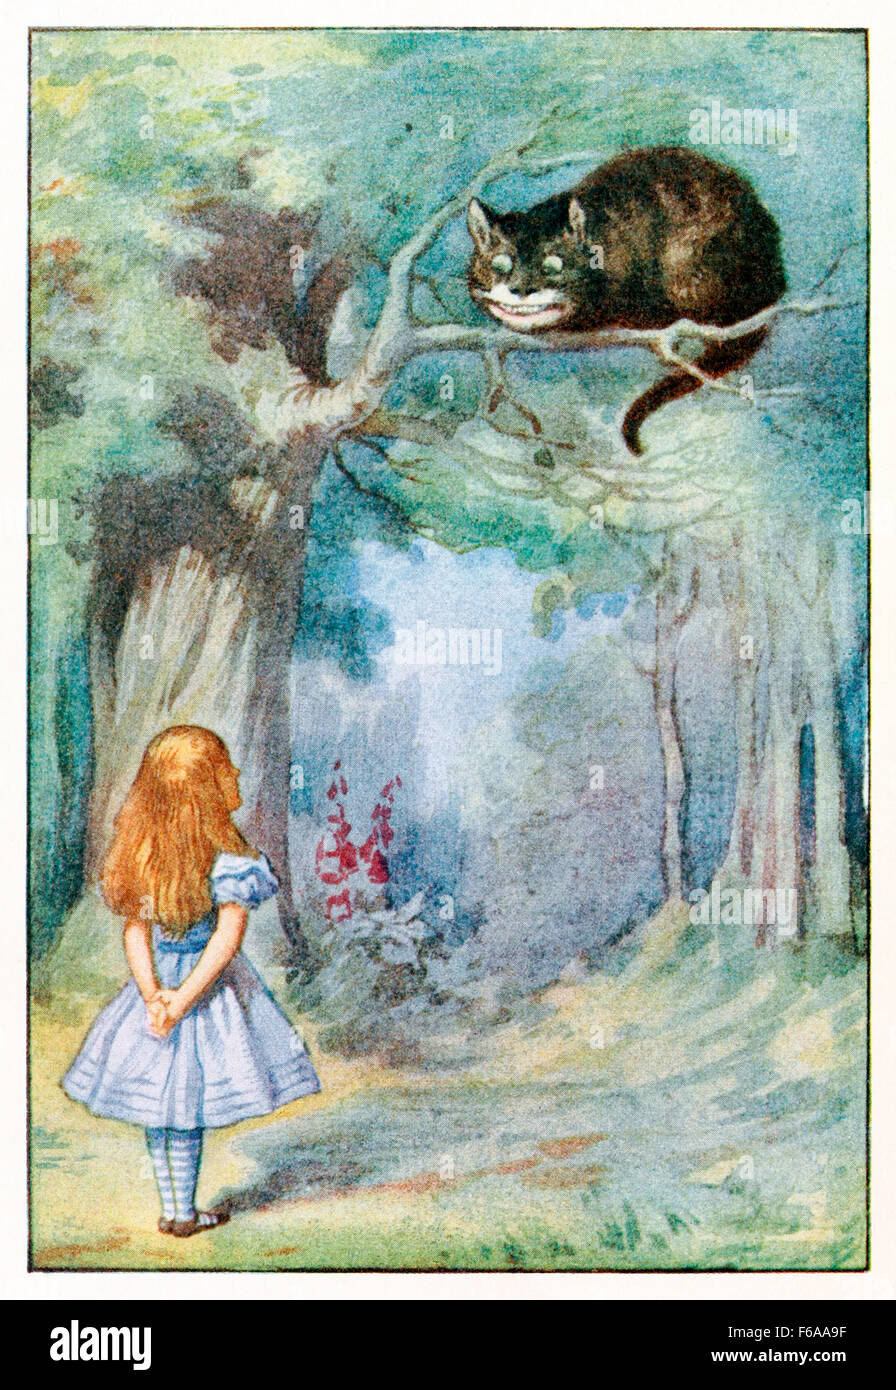 "Ich Knurren wenn ich zufrieden bin, und meine Rute wedeln, wenn ich wütend bin", sagte die Grinsekatze aus "Alices Abenteuer im Wunderland" von Lewis Carroll (1832-1898), illustriert von Sir John Tenniel. Siehe Beschreibung für mehr Informationen. Stockfoto